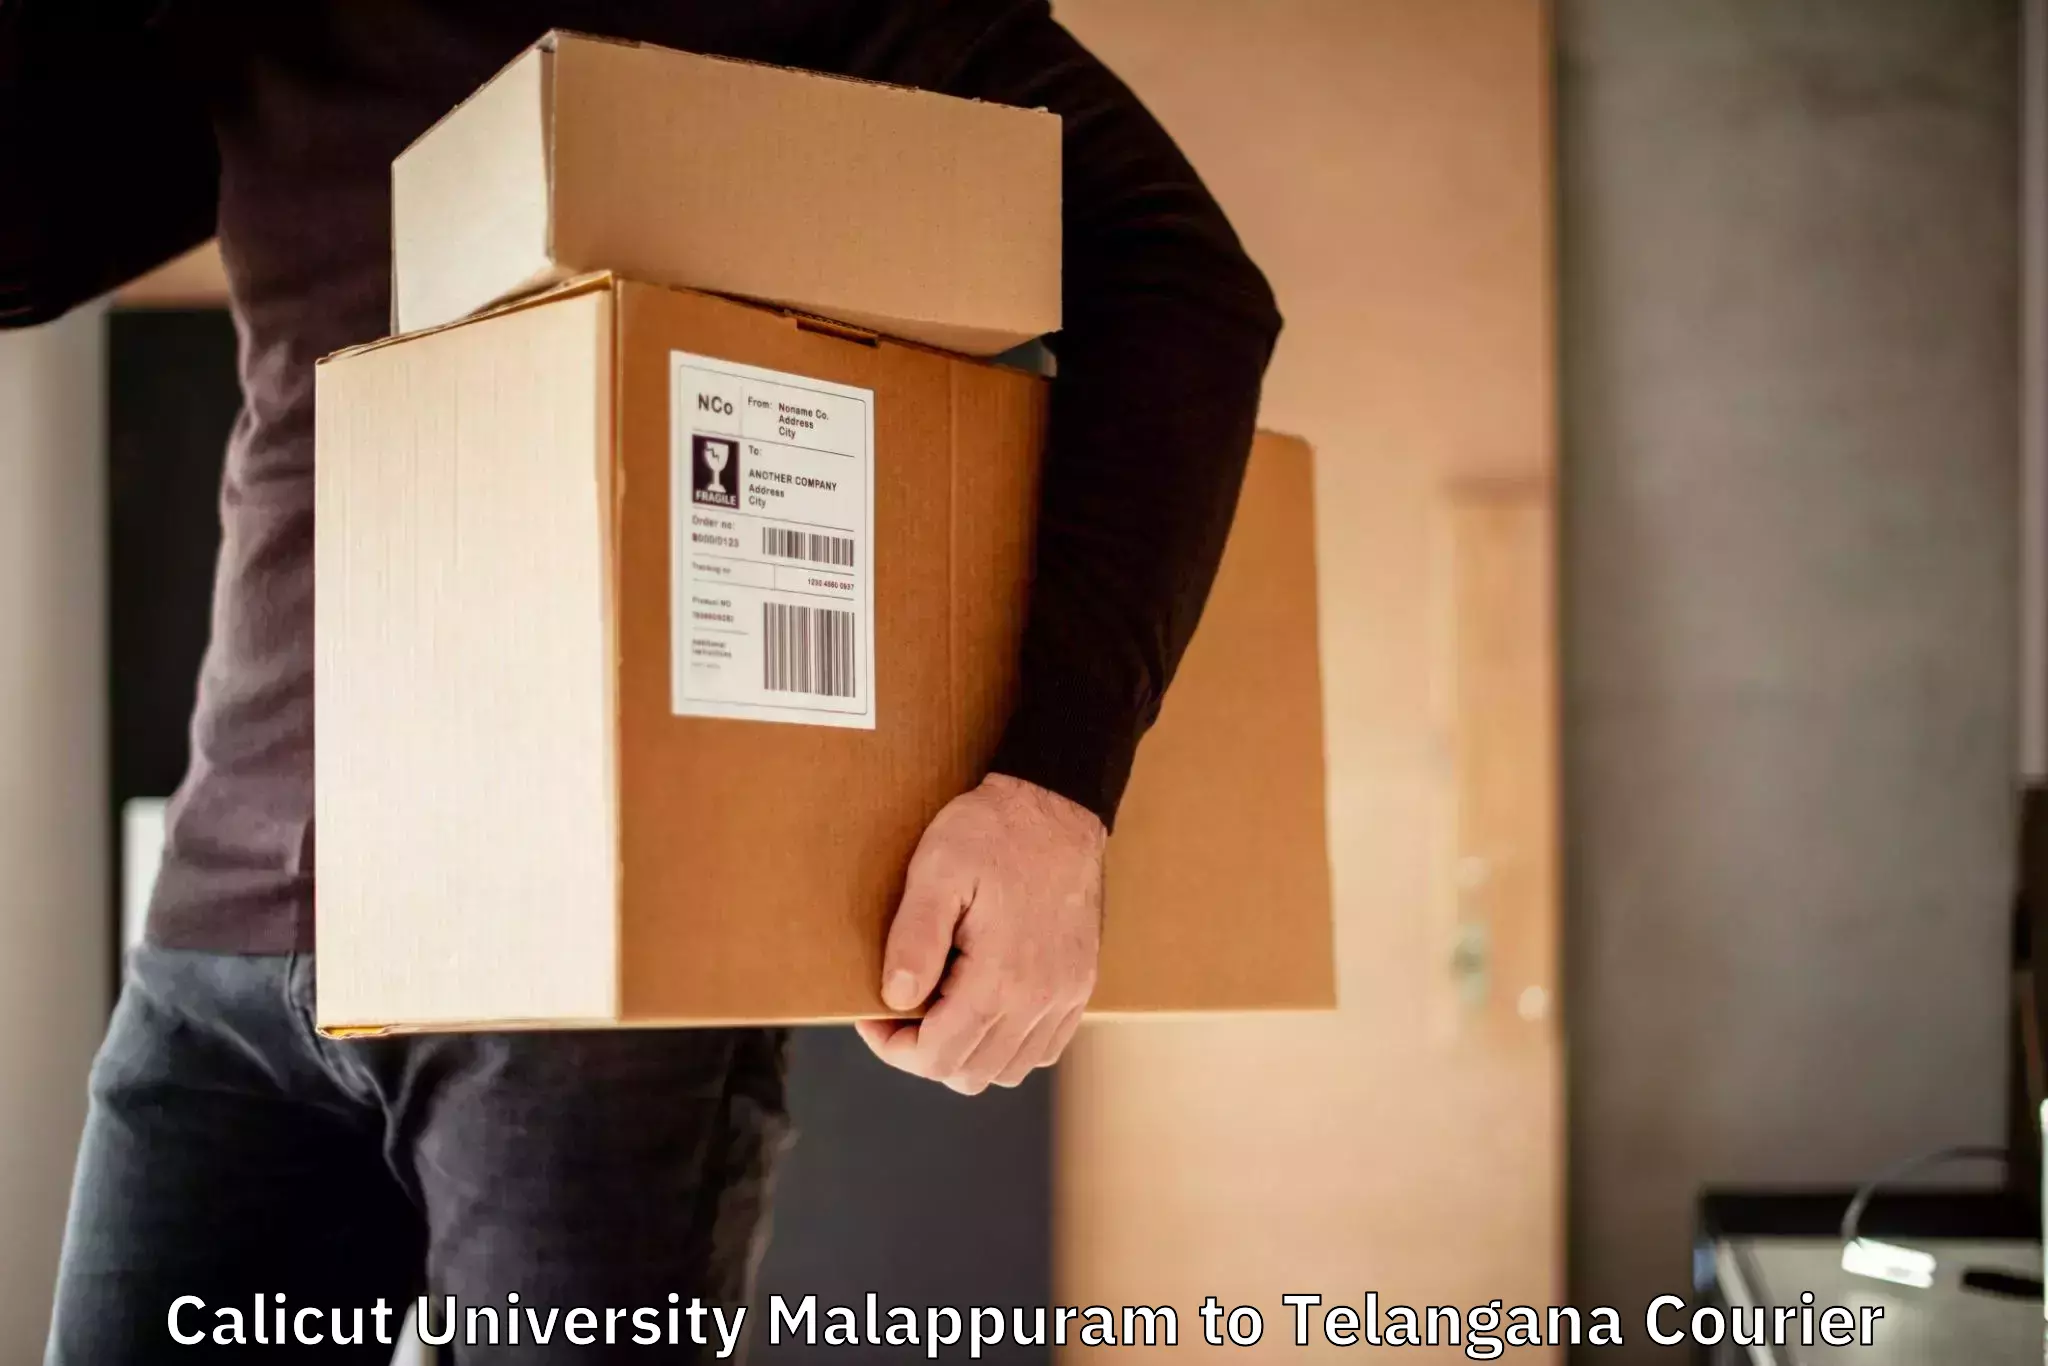 Comprehensive logistics solutions Calicut University Malappuram to Mudigonda